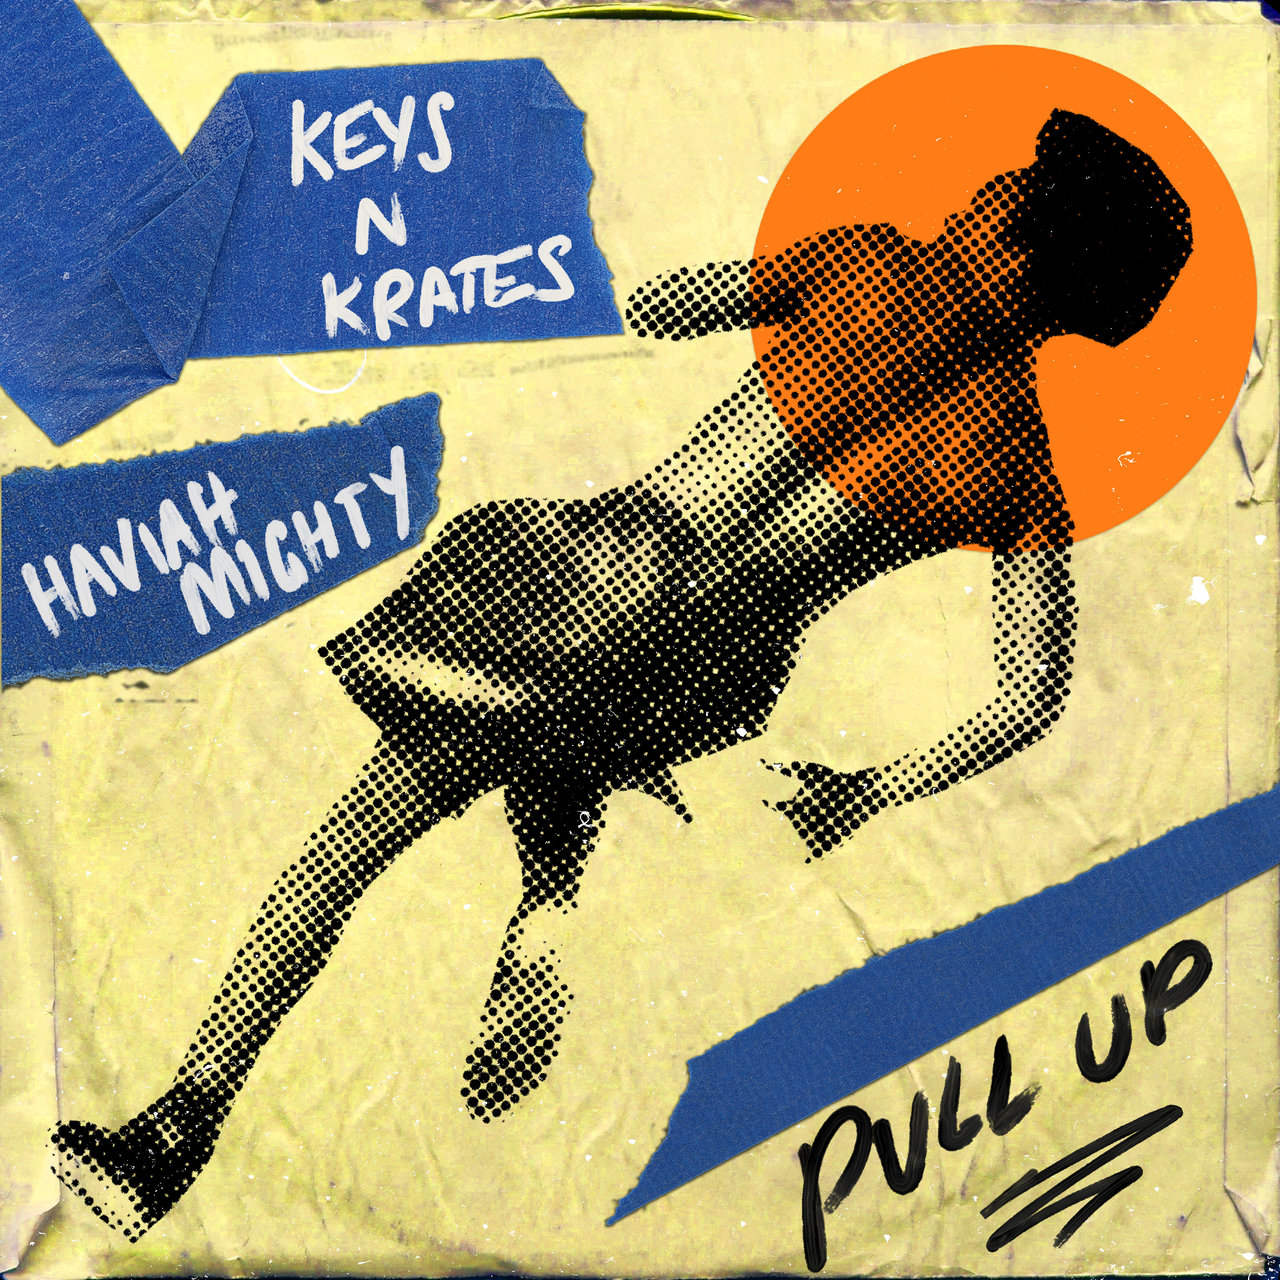 Keys N Krates & Haviah Mighty — Pull Up cover artwork